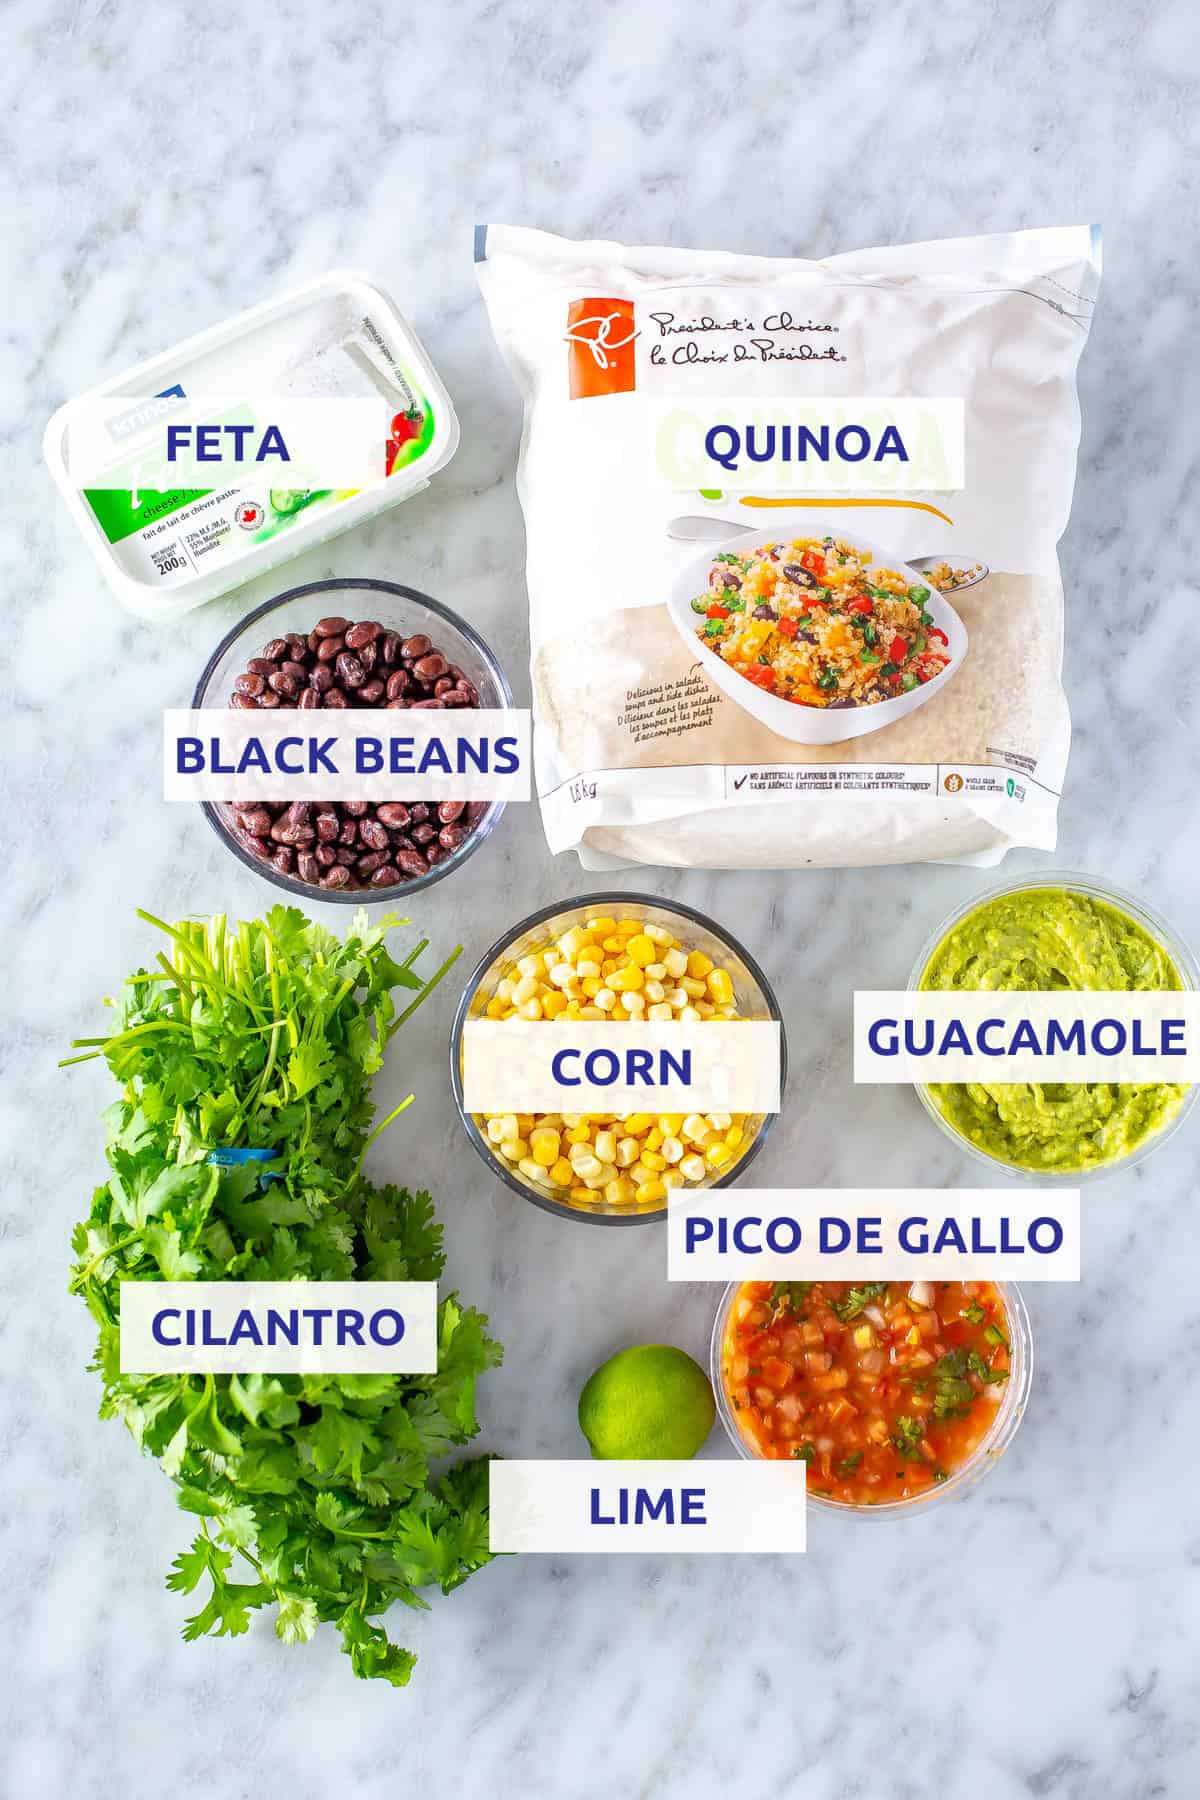 Ingredients for Instant Pot quinoa burrito bowls: quinoa, feta, black beans, corn, cilantro, guacamole, lime and pice de gallo.